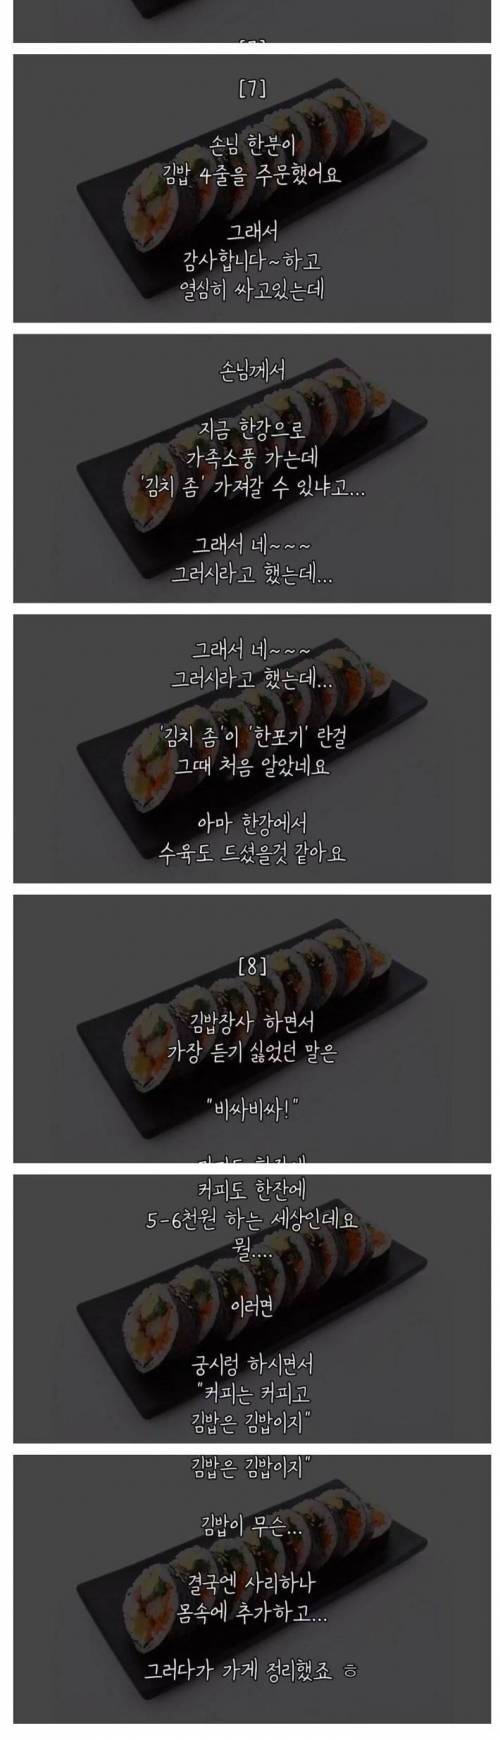 [스압] 사장님이 김밥집 접은 이유